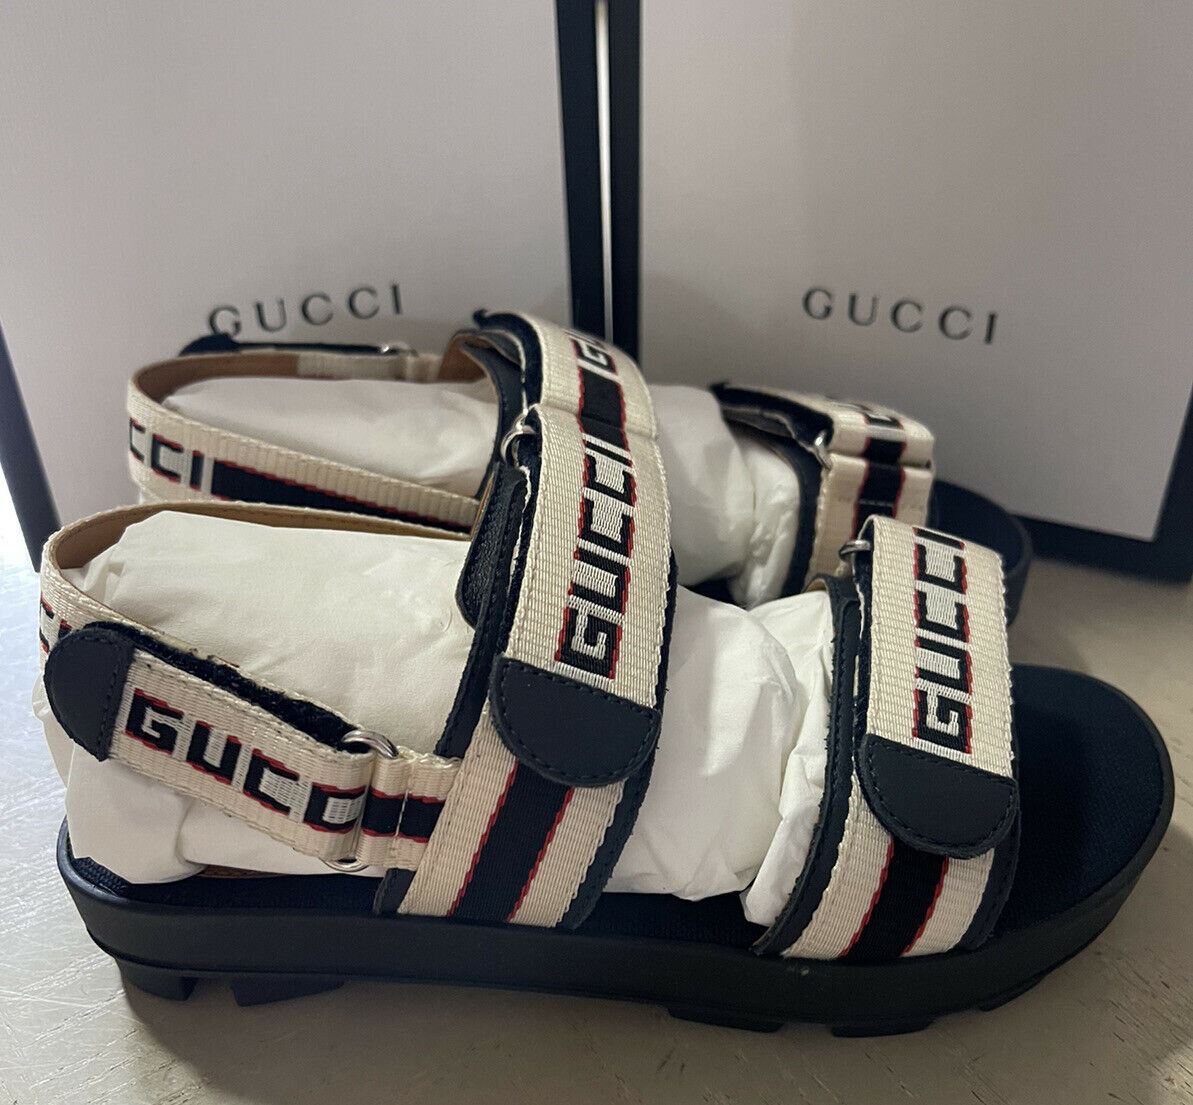 NIB Gucci Детские сандалии из парусины/кожи, черные/белые, размер 31/13, США, возраст 6,5 лет